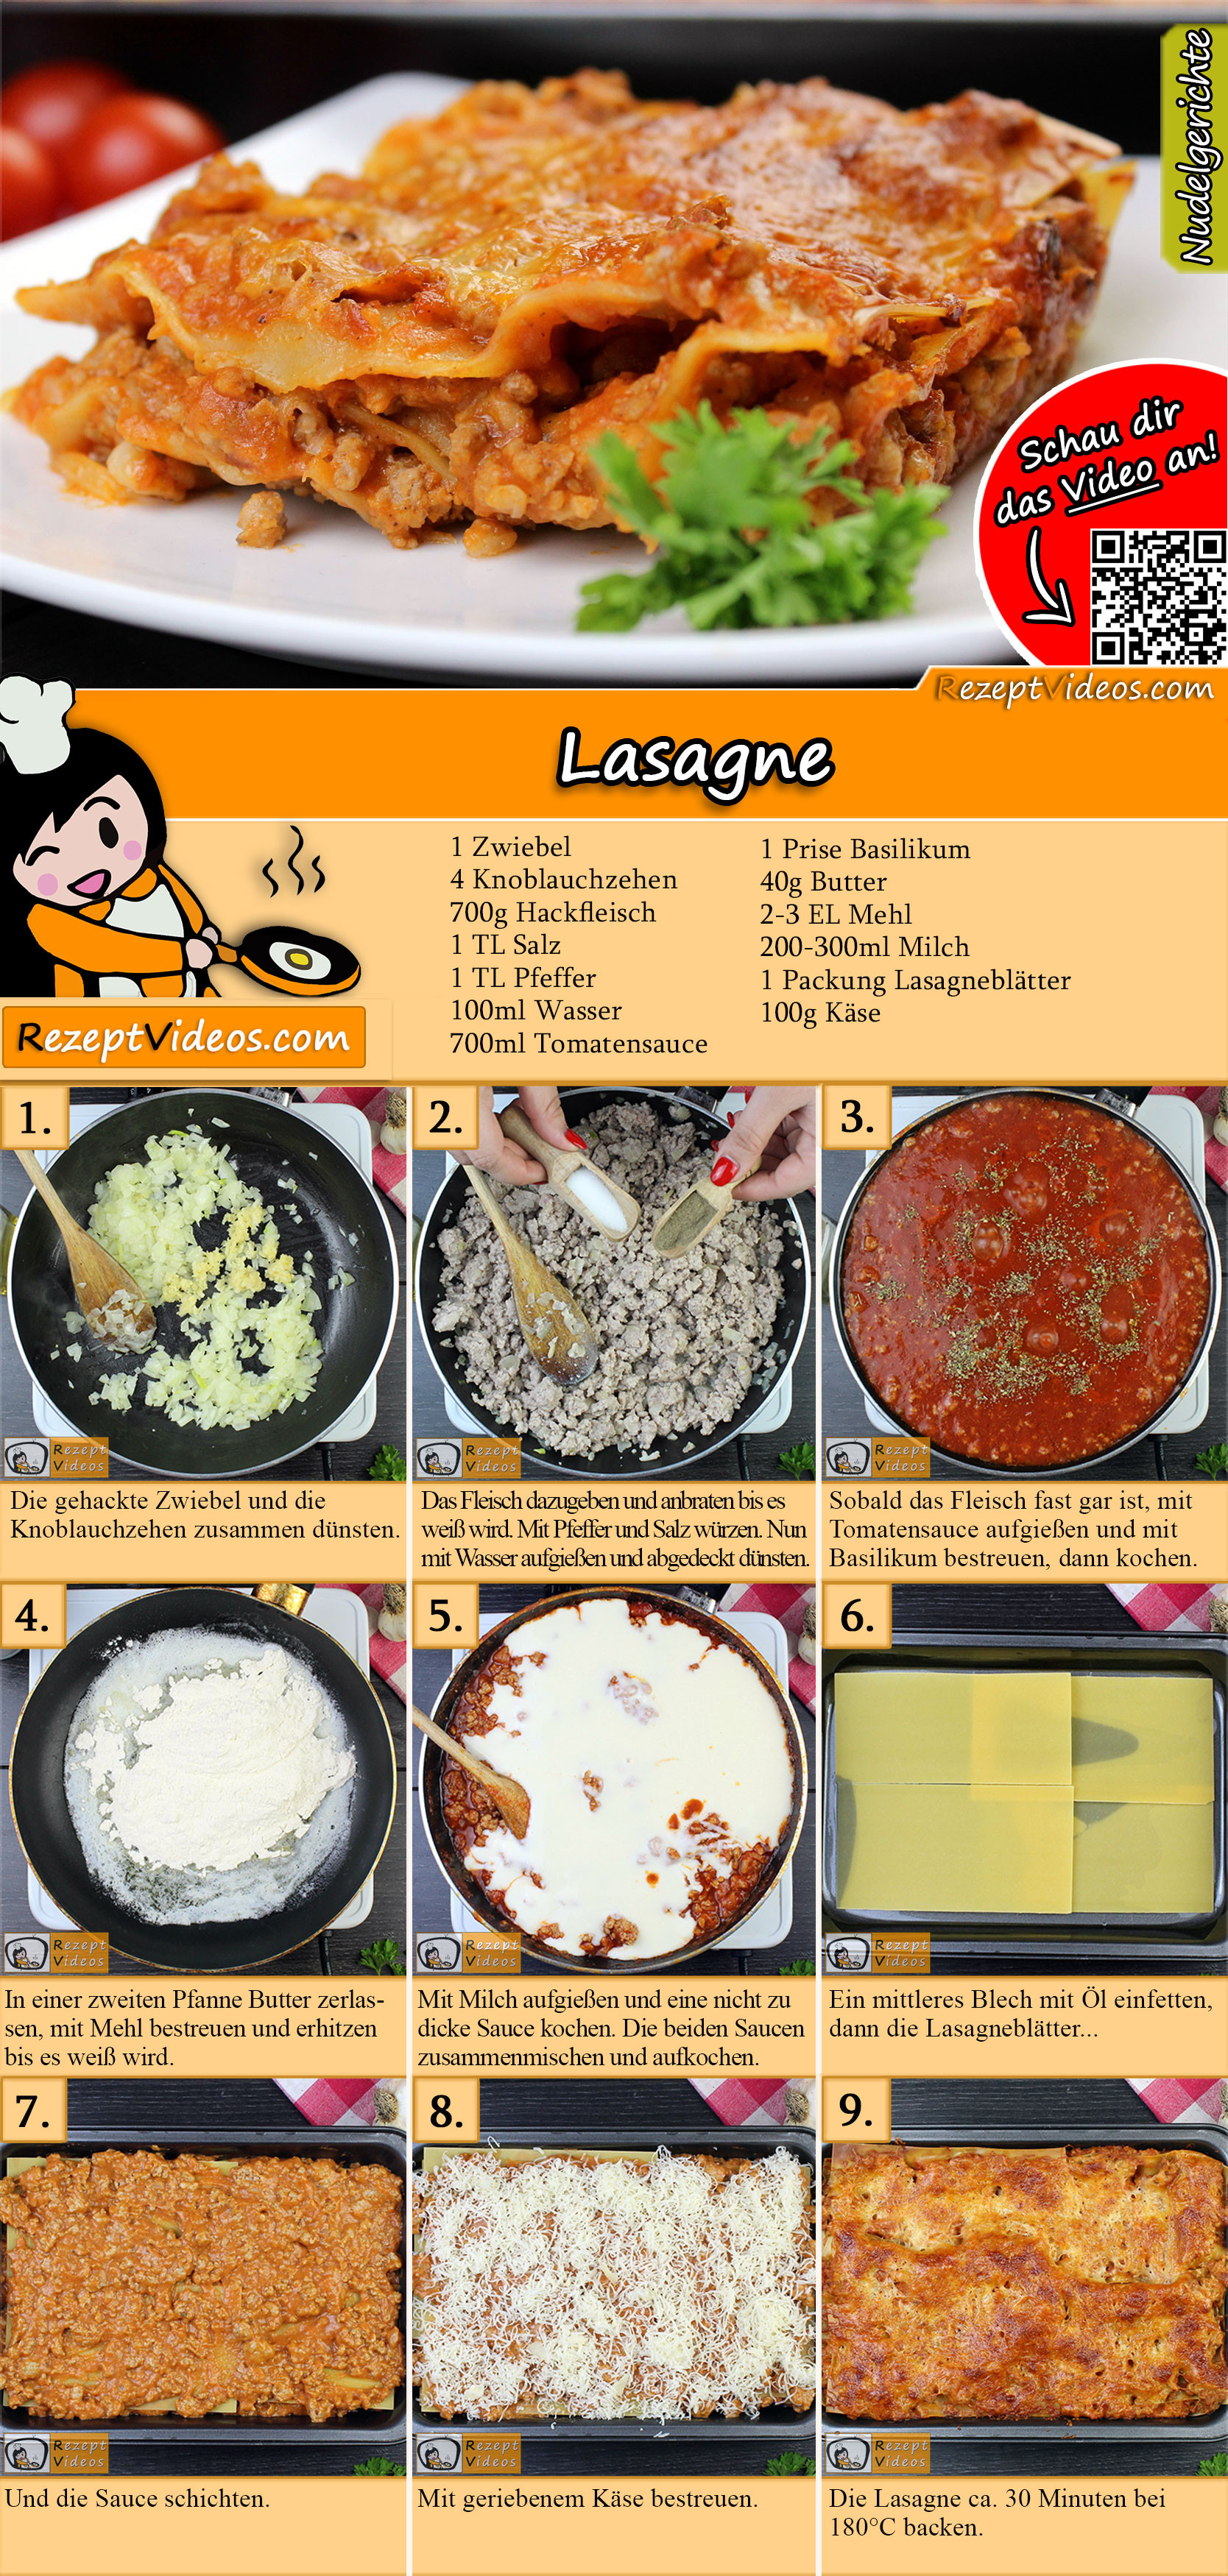 Lasagne Rezept mit Video